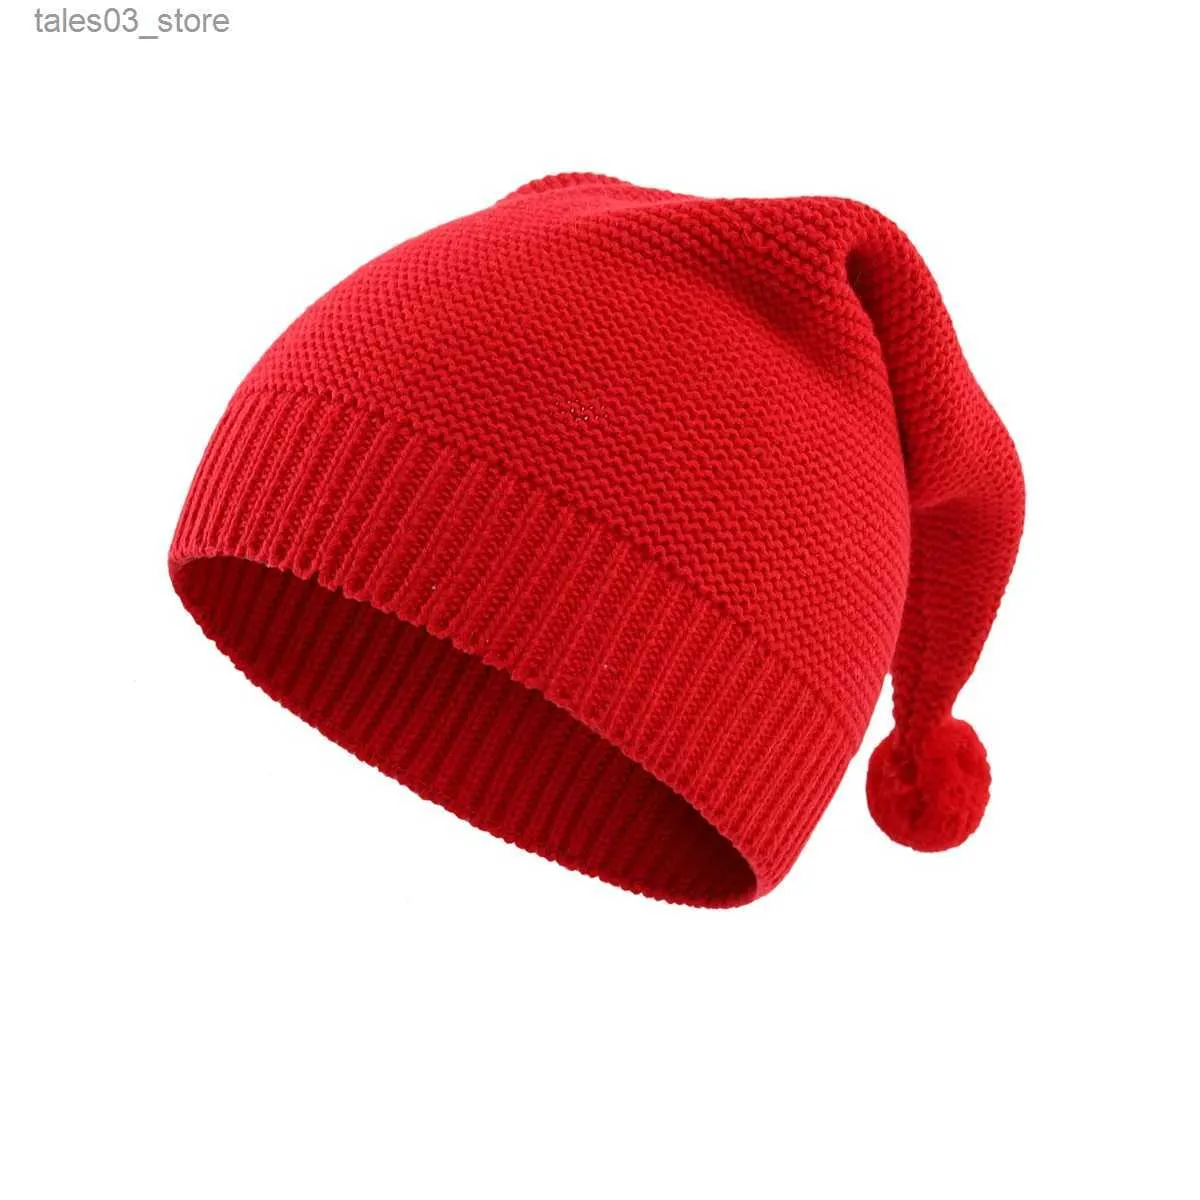 ビーニー/スカルキャップコネチール幼児幼児の男の子の女の子かわいい冬のニット帽子温かい綿スカルキャップずるいビーニーキッズクリスマス帽子Q231130